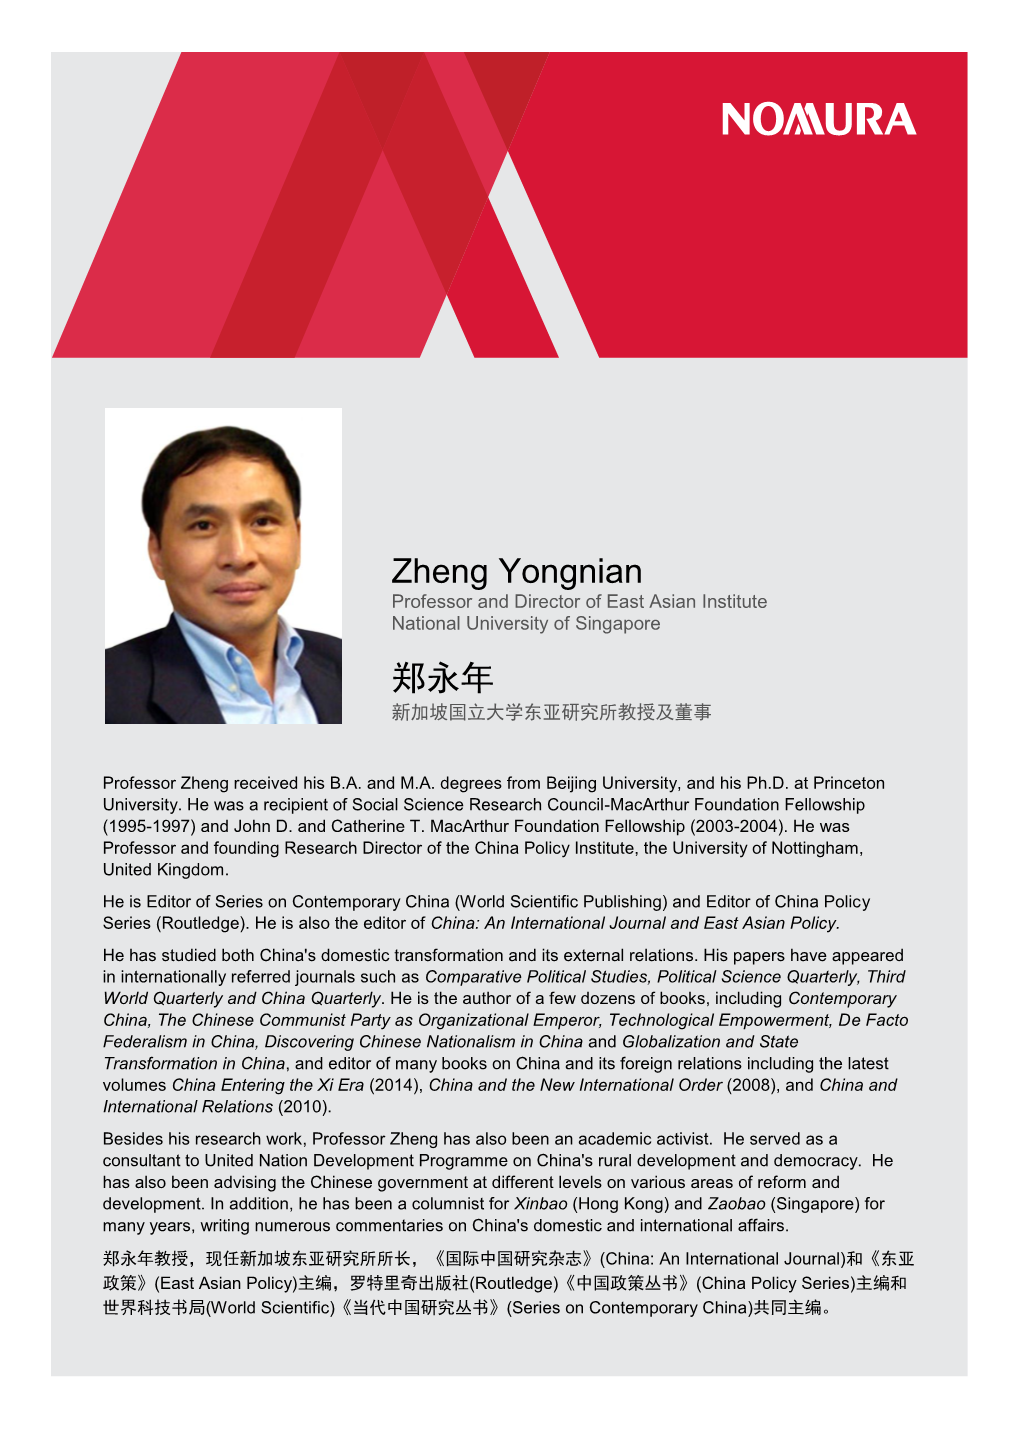 Professor ZHENG Yongnian